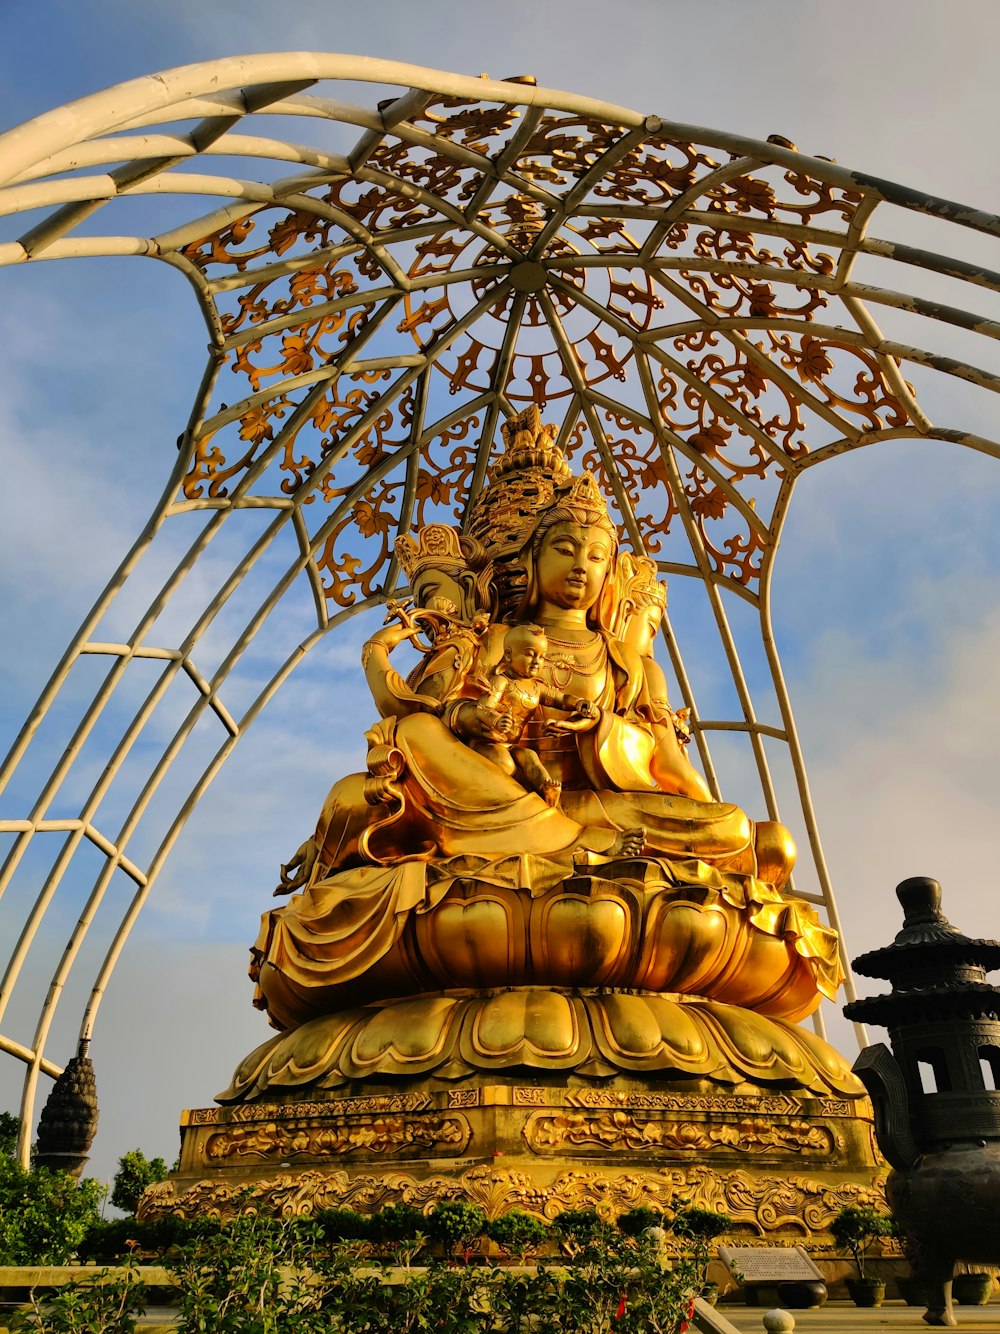 Une statue de Bouddha dorée assise sous une structure métallique